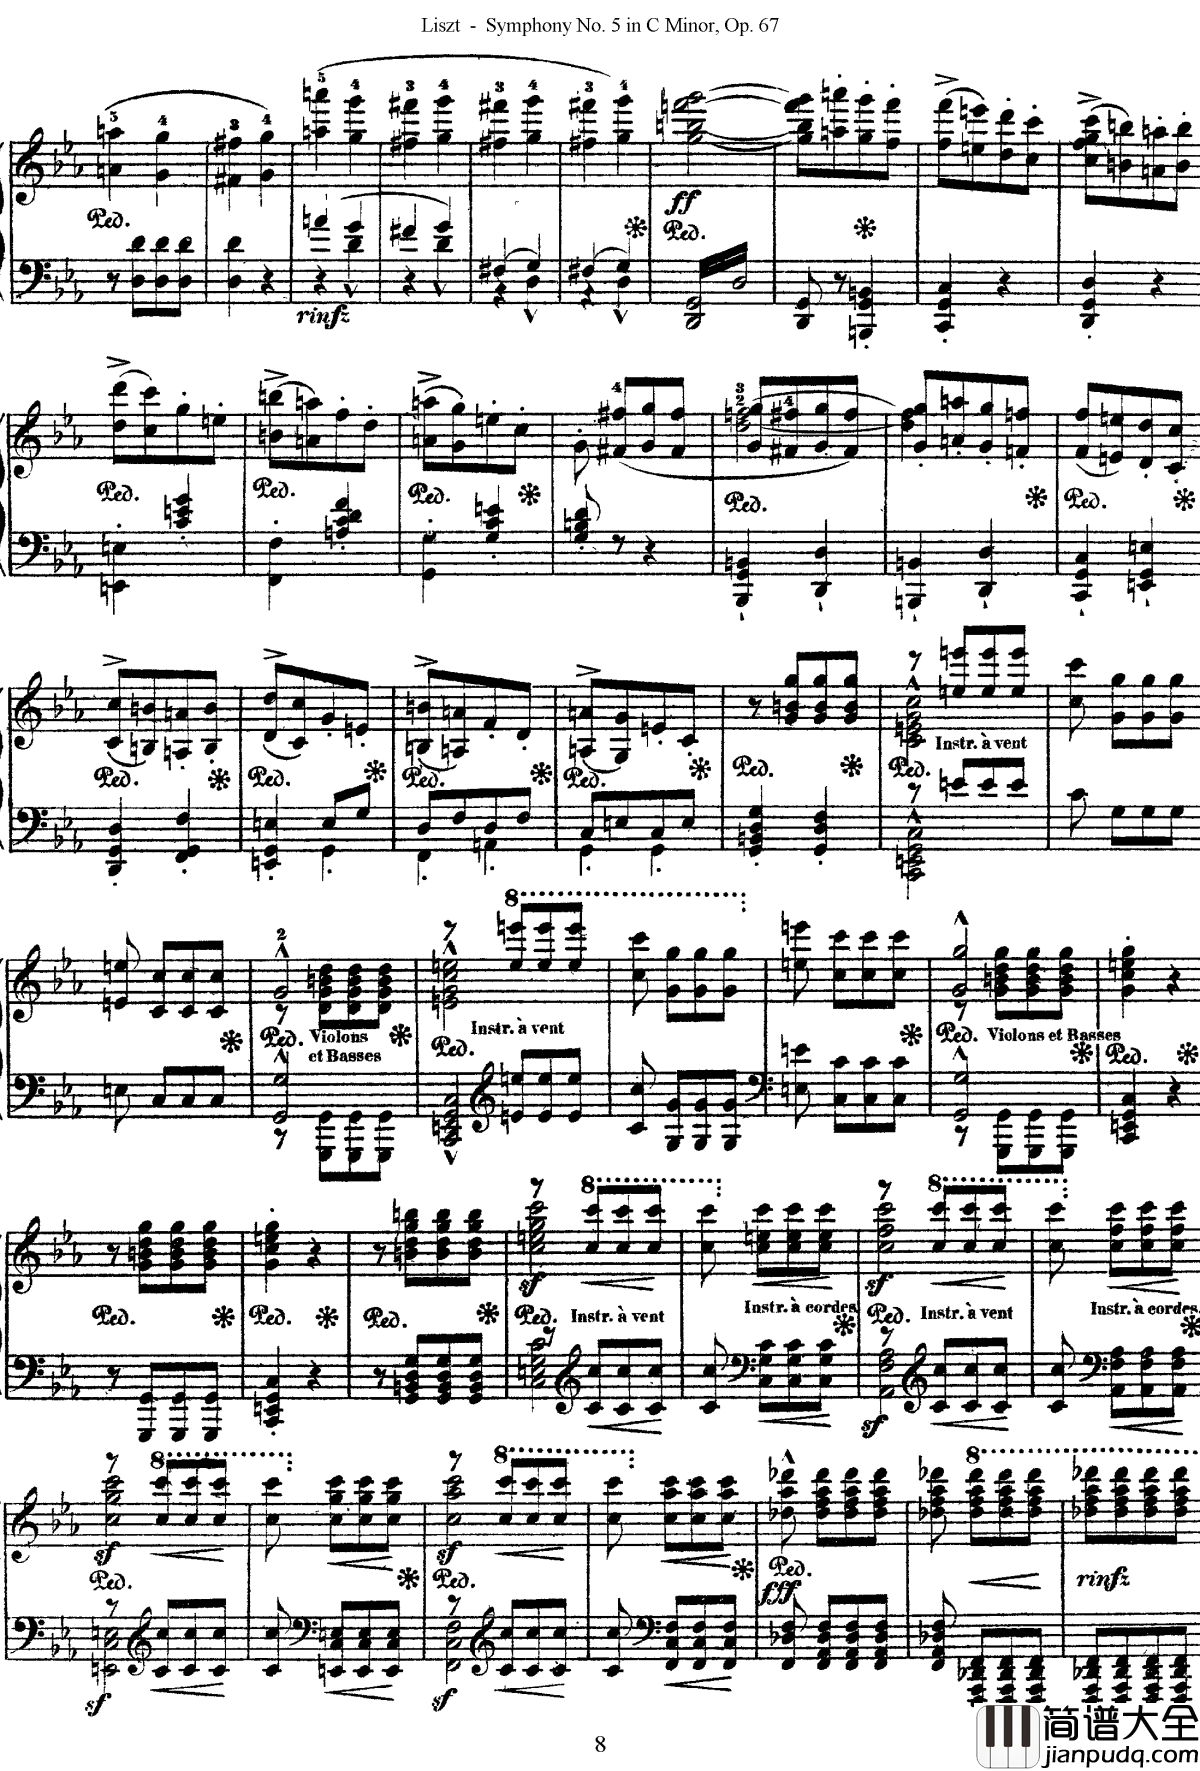 第五交响乐的钢琴曲钢琴谱_李斯特_李斯特改编自贝多芬